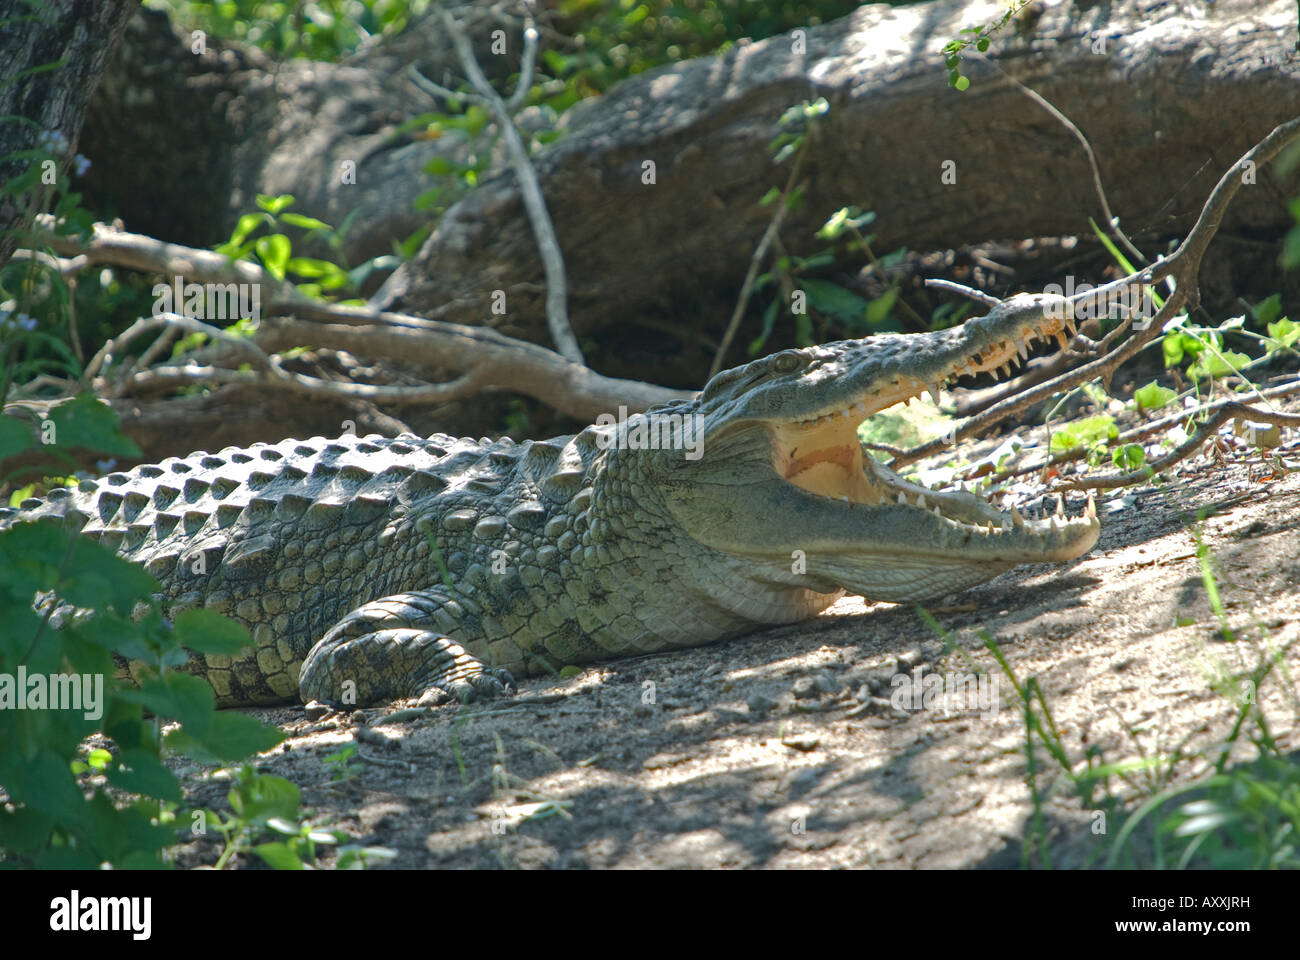 Un crocodile du Nil de soleil lui-même sur les bords d'un étang, avec bouche ouverte Banque D'Images